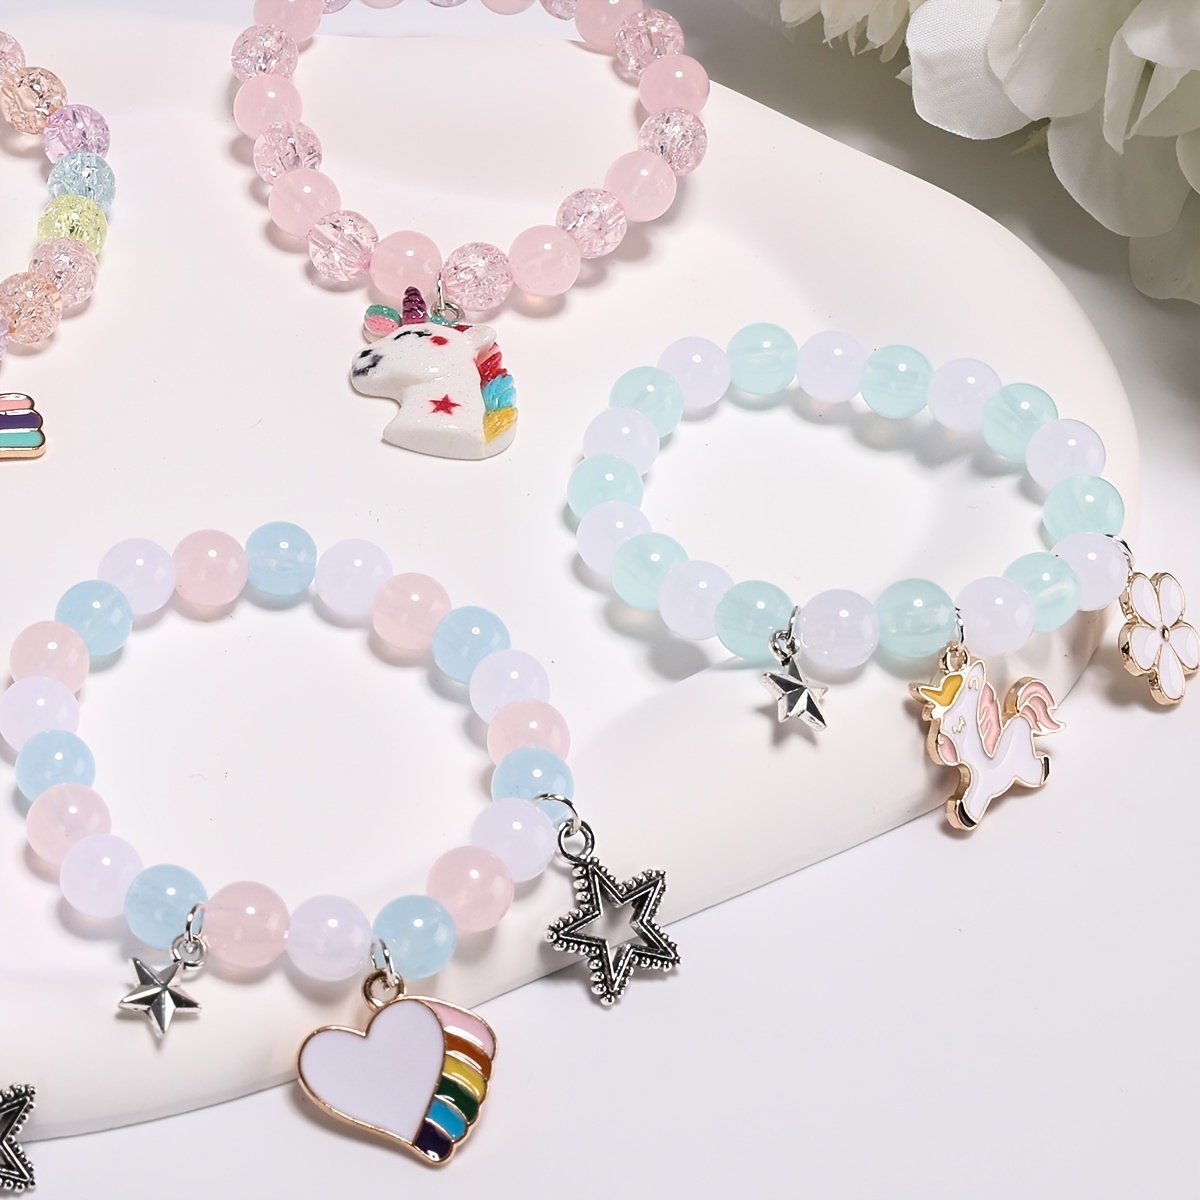 Transparent Color Glass Beads Bracelet Making Kit, Girls' Lovely